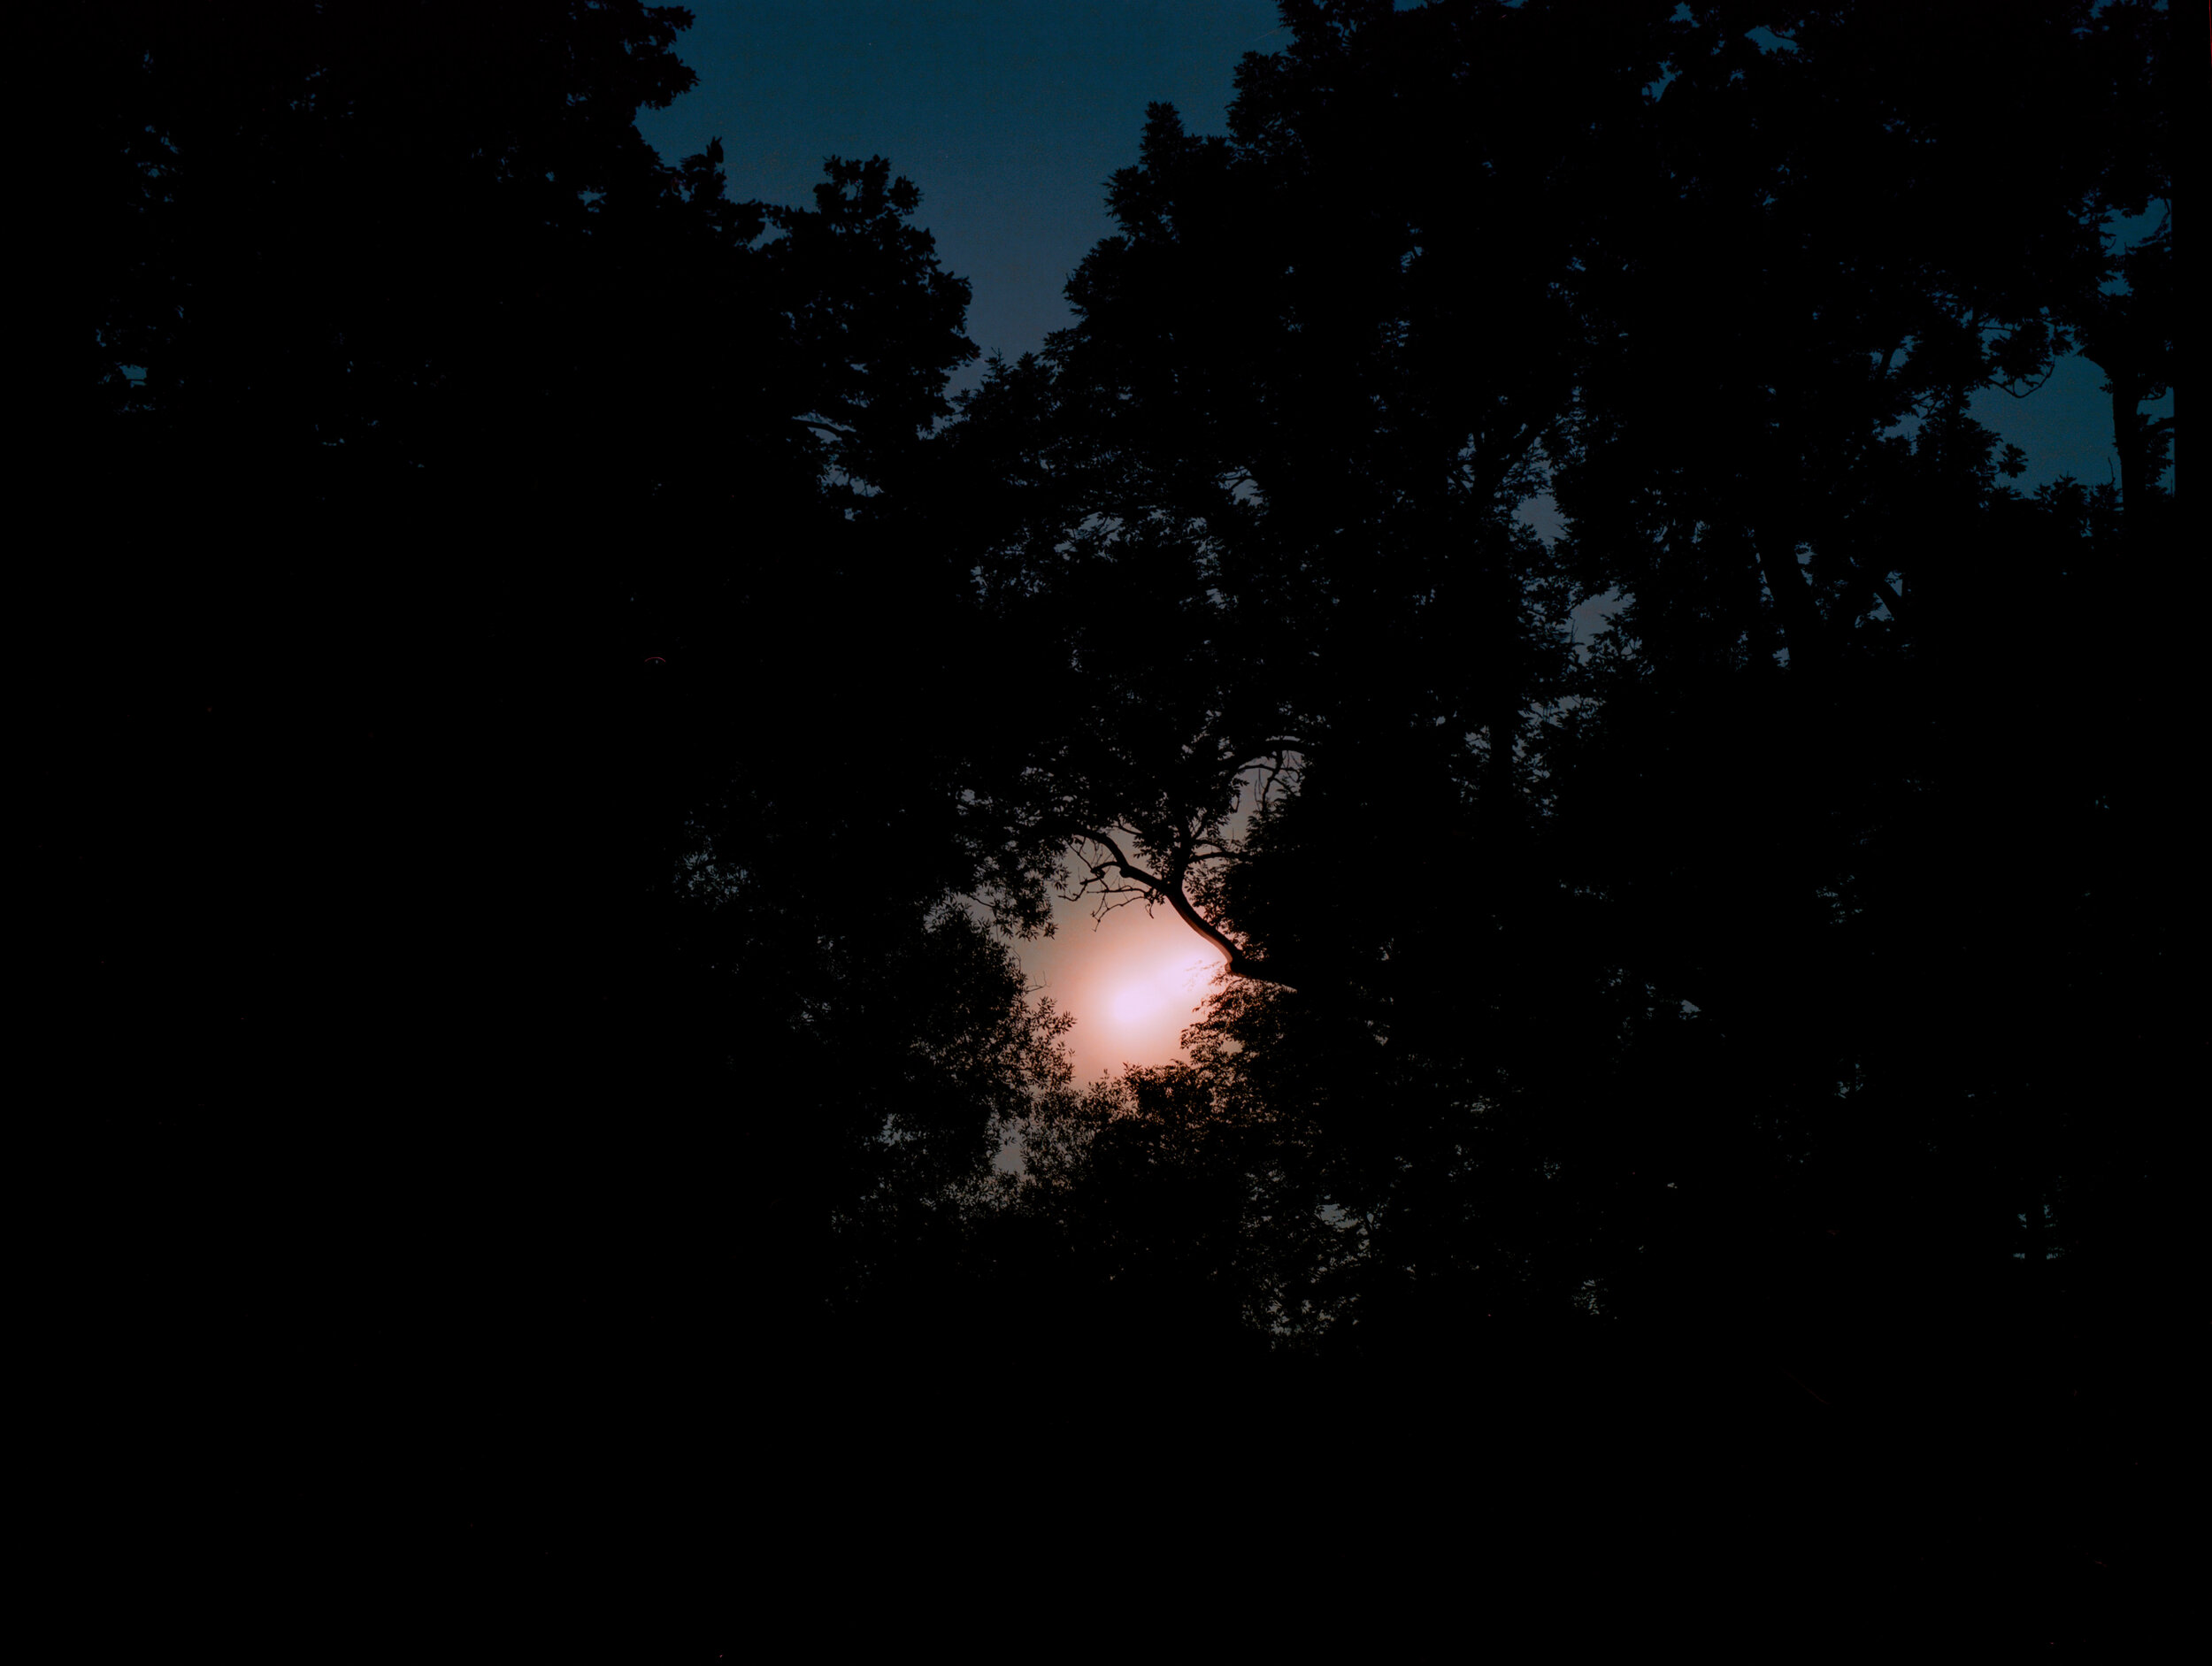 Der Mond überm Oberstjägermeisterbach (23:55-00:01)